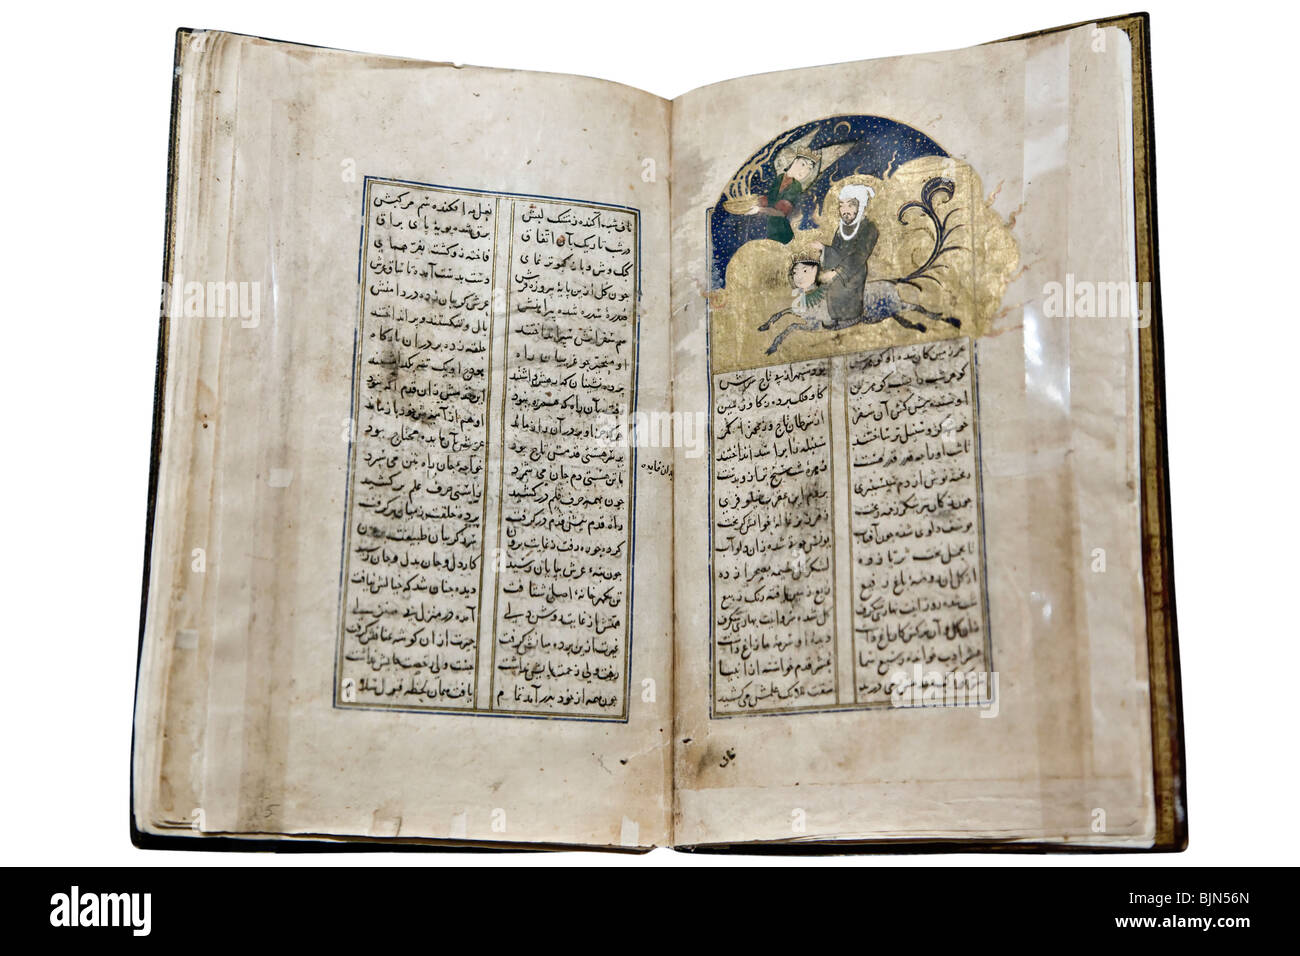 Santo vecchio libro islamico con un dipinto del profeta Maometto Foto Stock